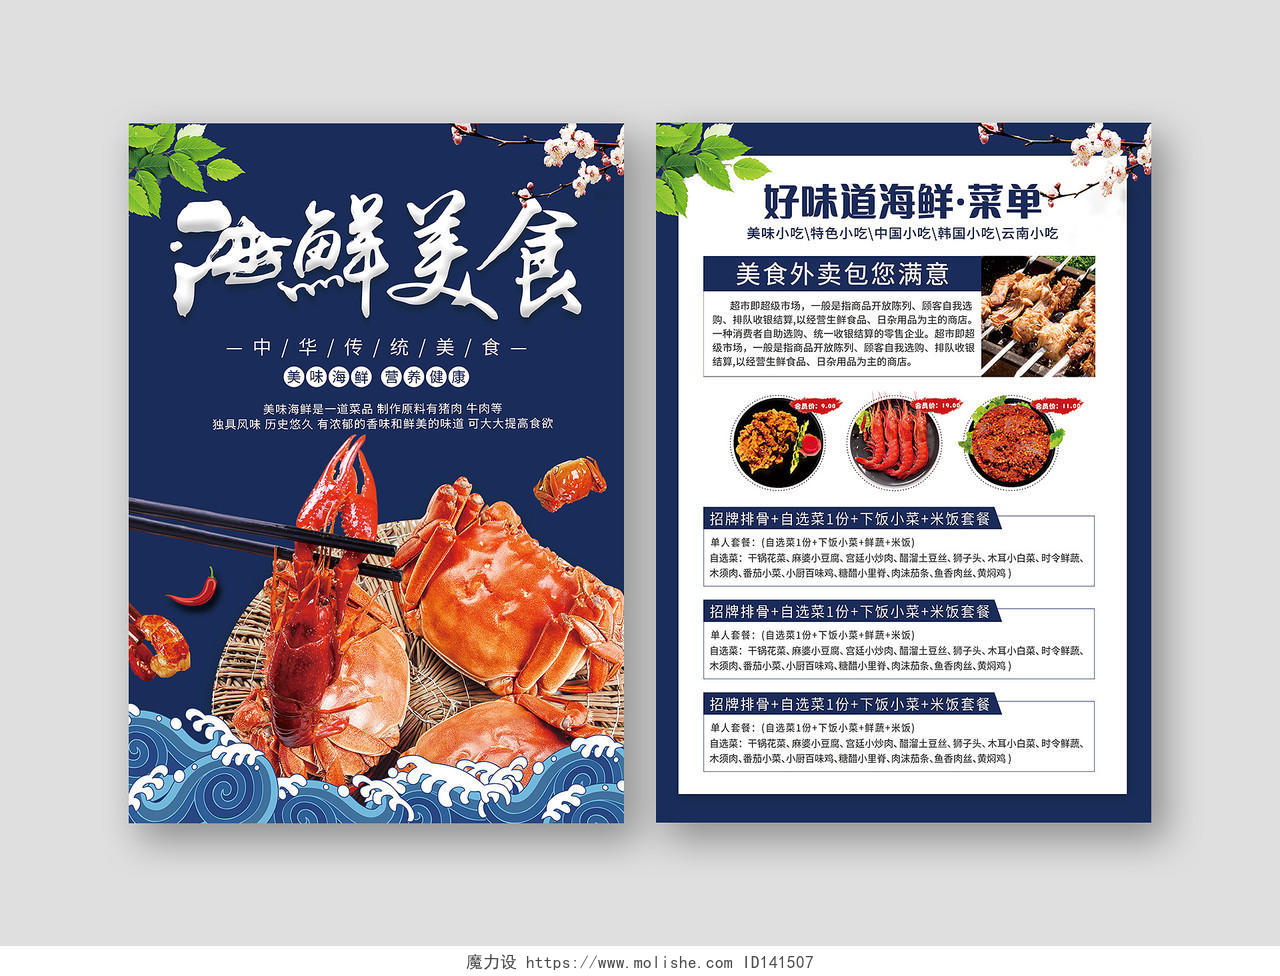 蓝色背景餐饮海鲜美食菜单单传单页饭店宣传单海鲜菜单